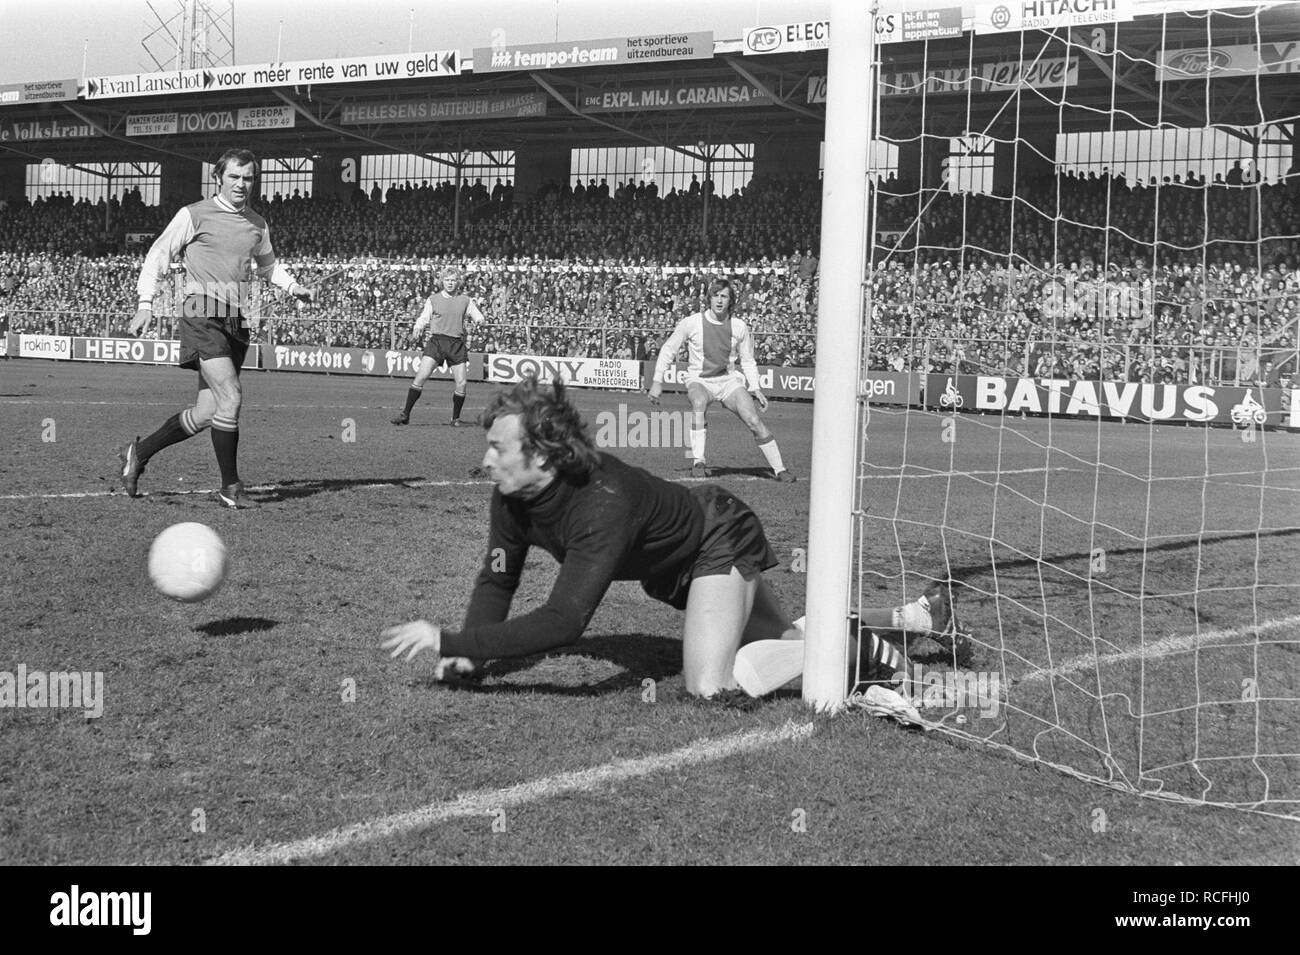 Ajax tegen PSV 4-1, Van Beveren in actie, links Pleun Strik, Bestanddeelnr 925-4514. Stock Photo